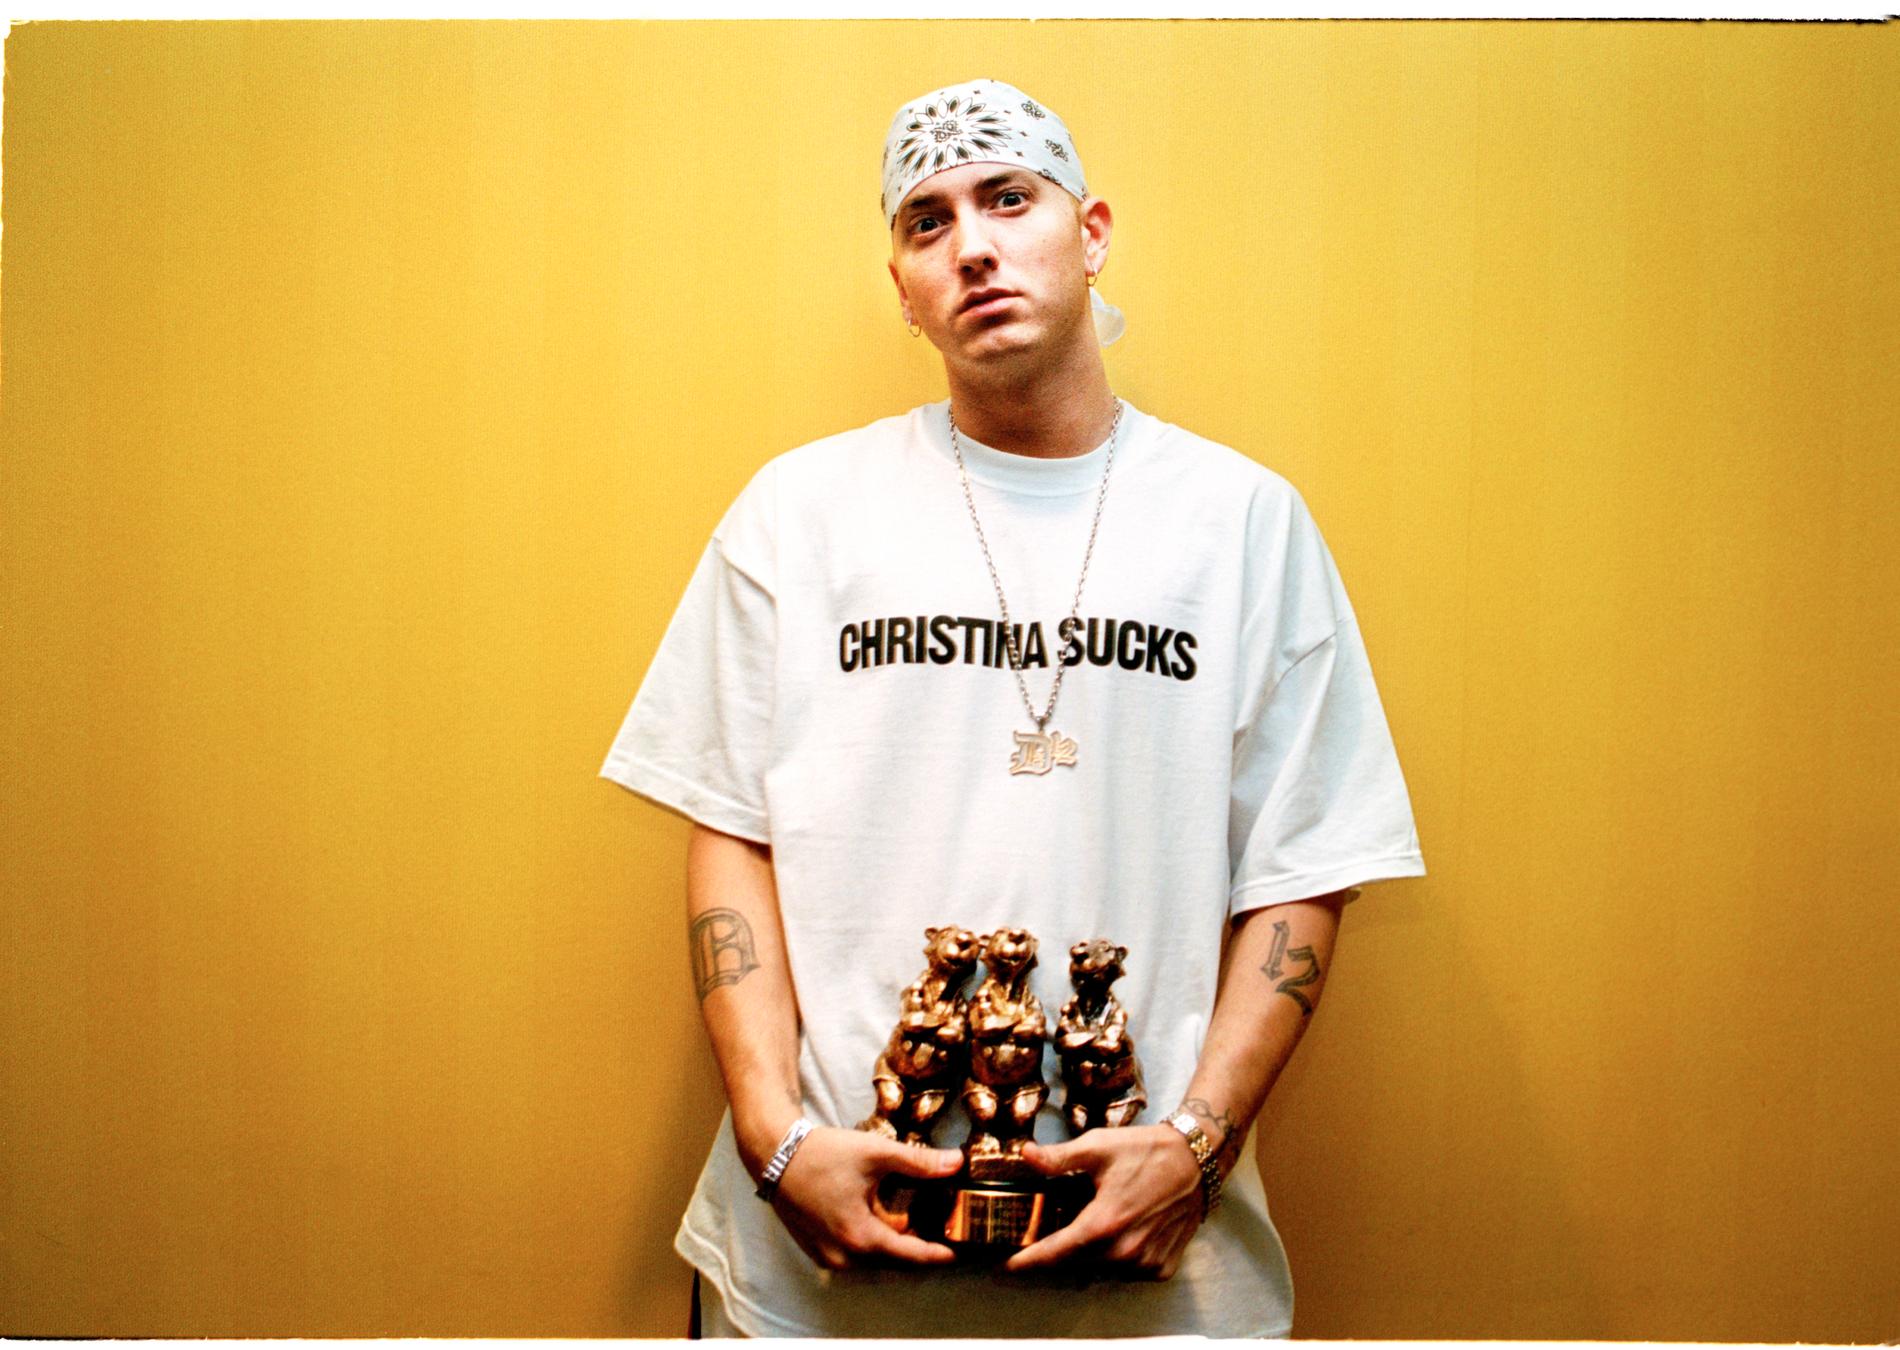 Arg Eminem passade på att skicka ett meddelande till Christina Aguilera när han tog emot sina rockbjörnar 2001.